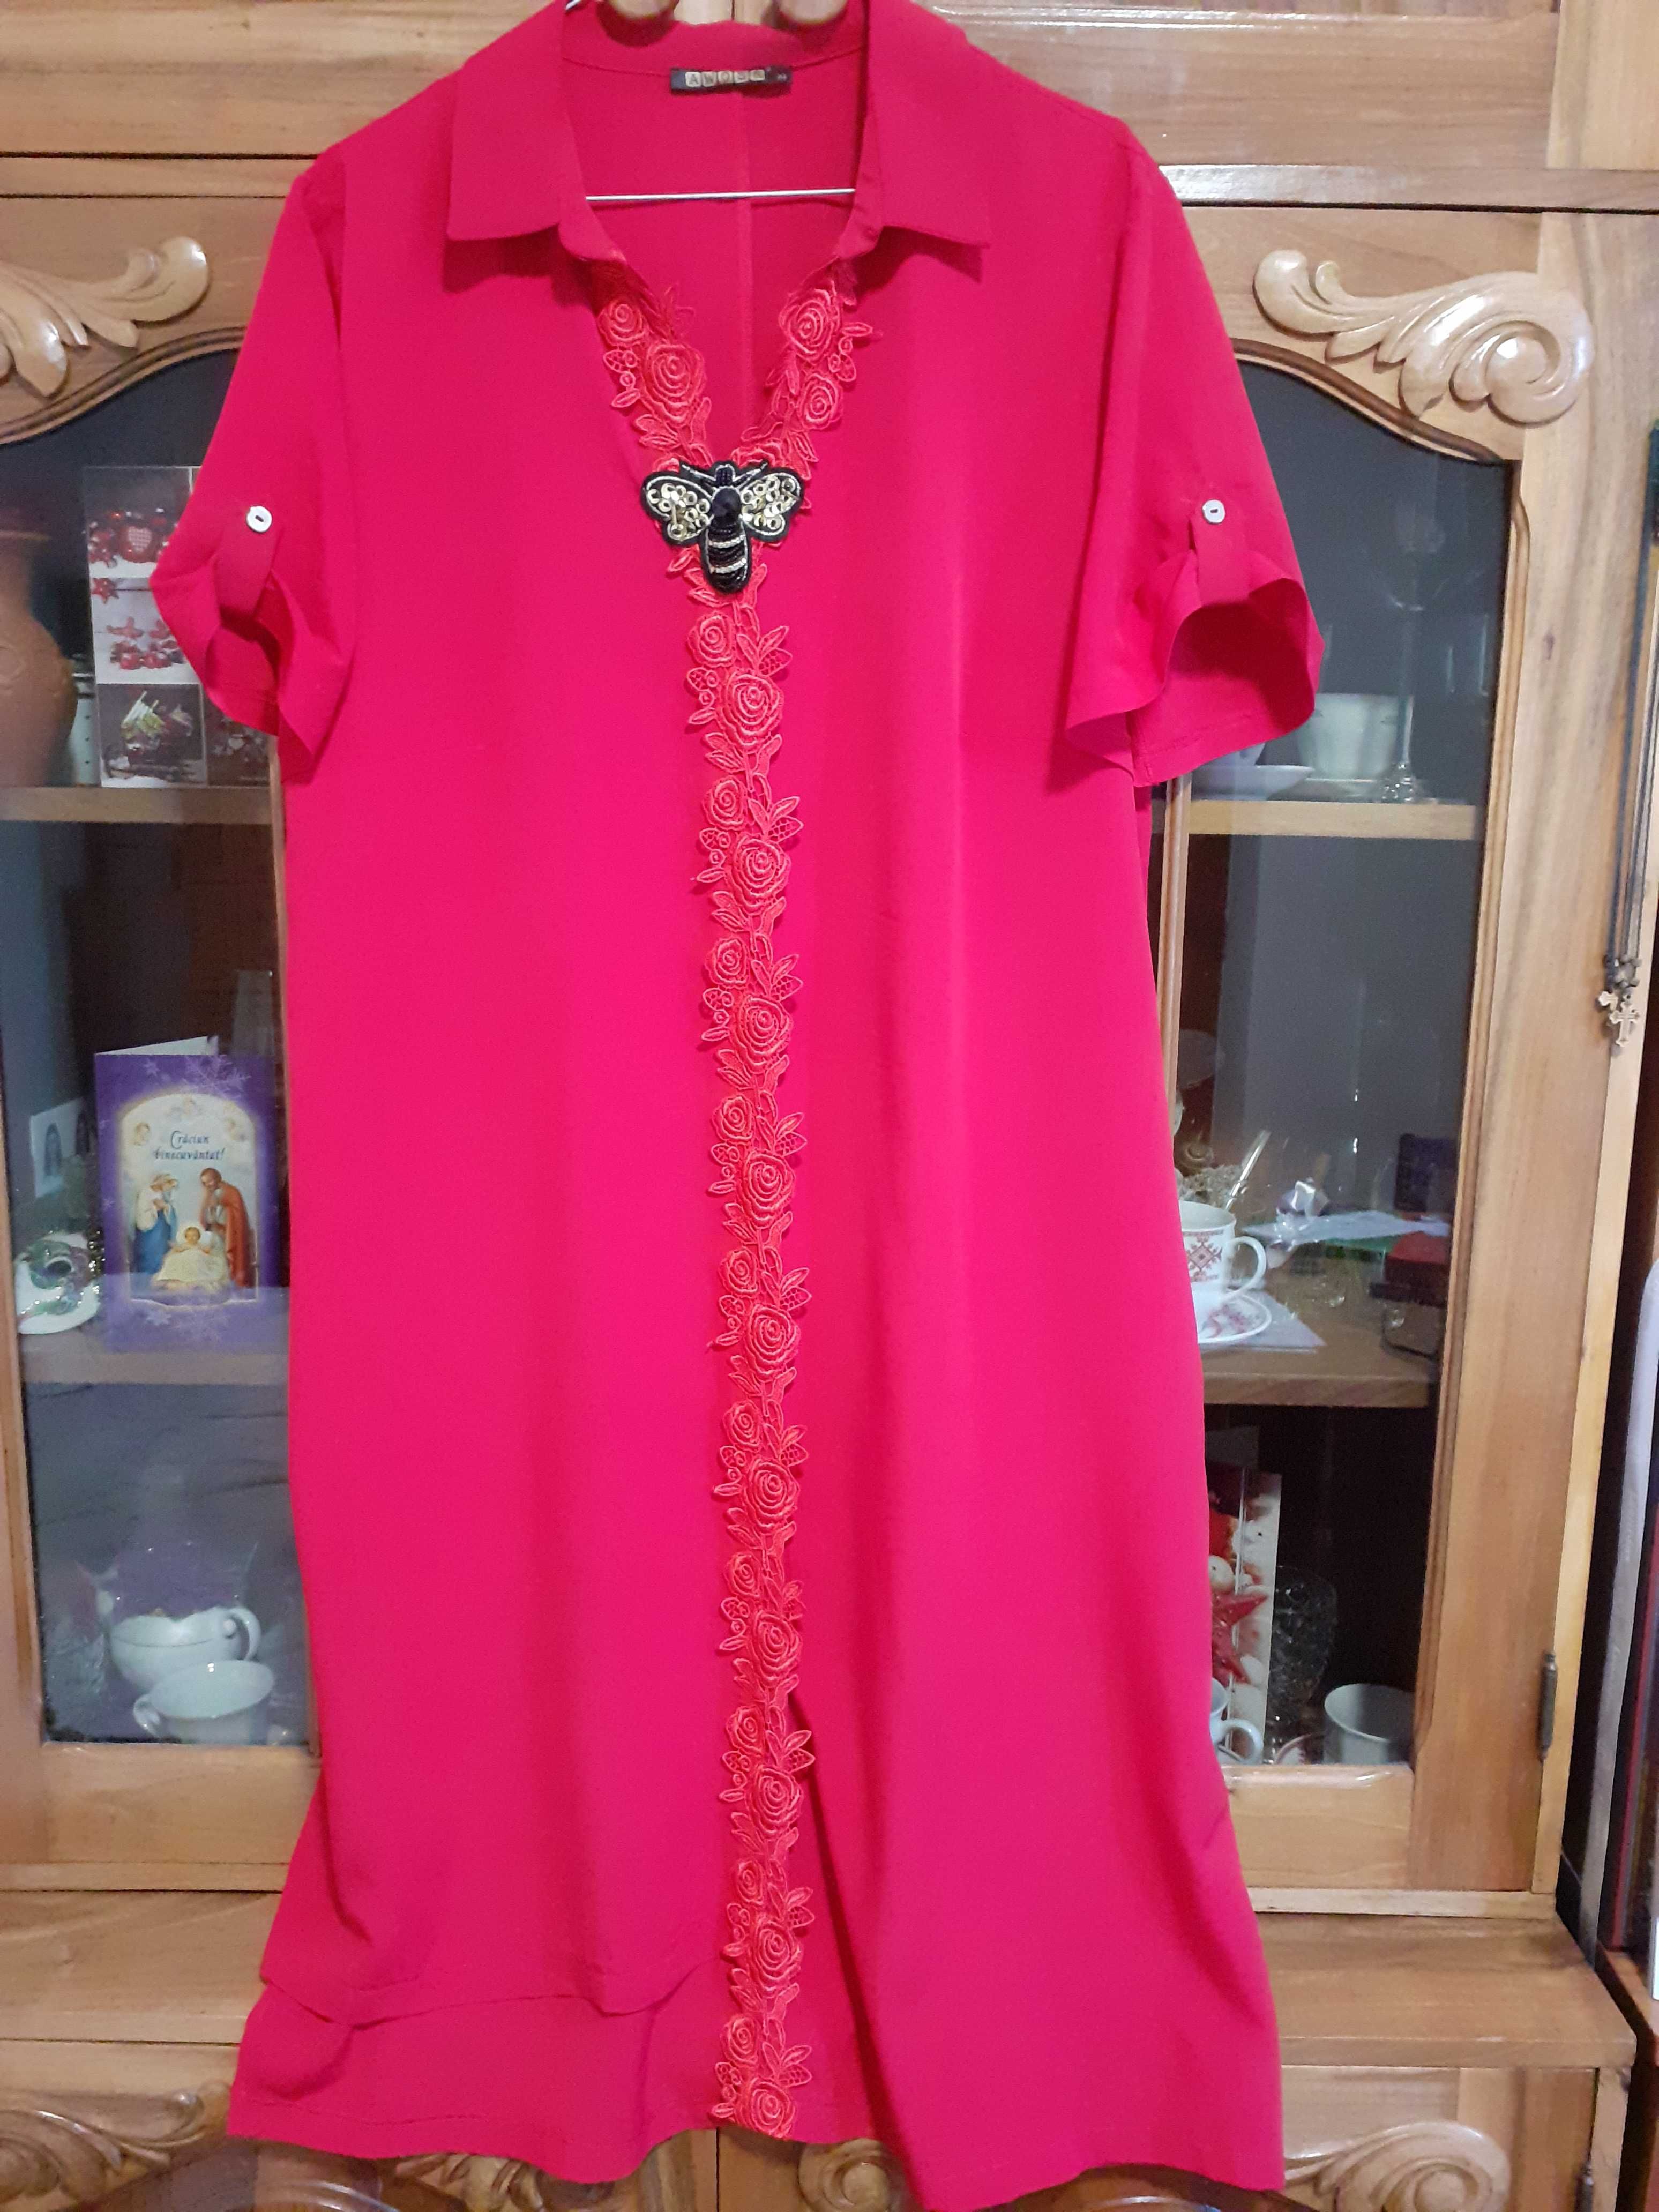 Rochie roșie lungă, nouă, AWOSS mărimea L, fabricată în Turcia